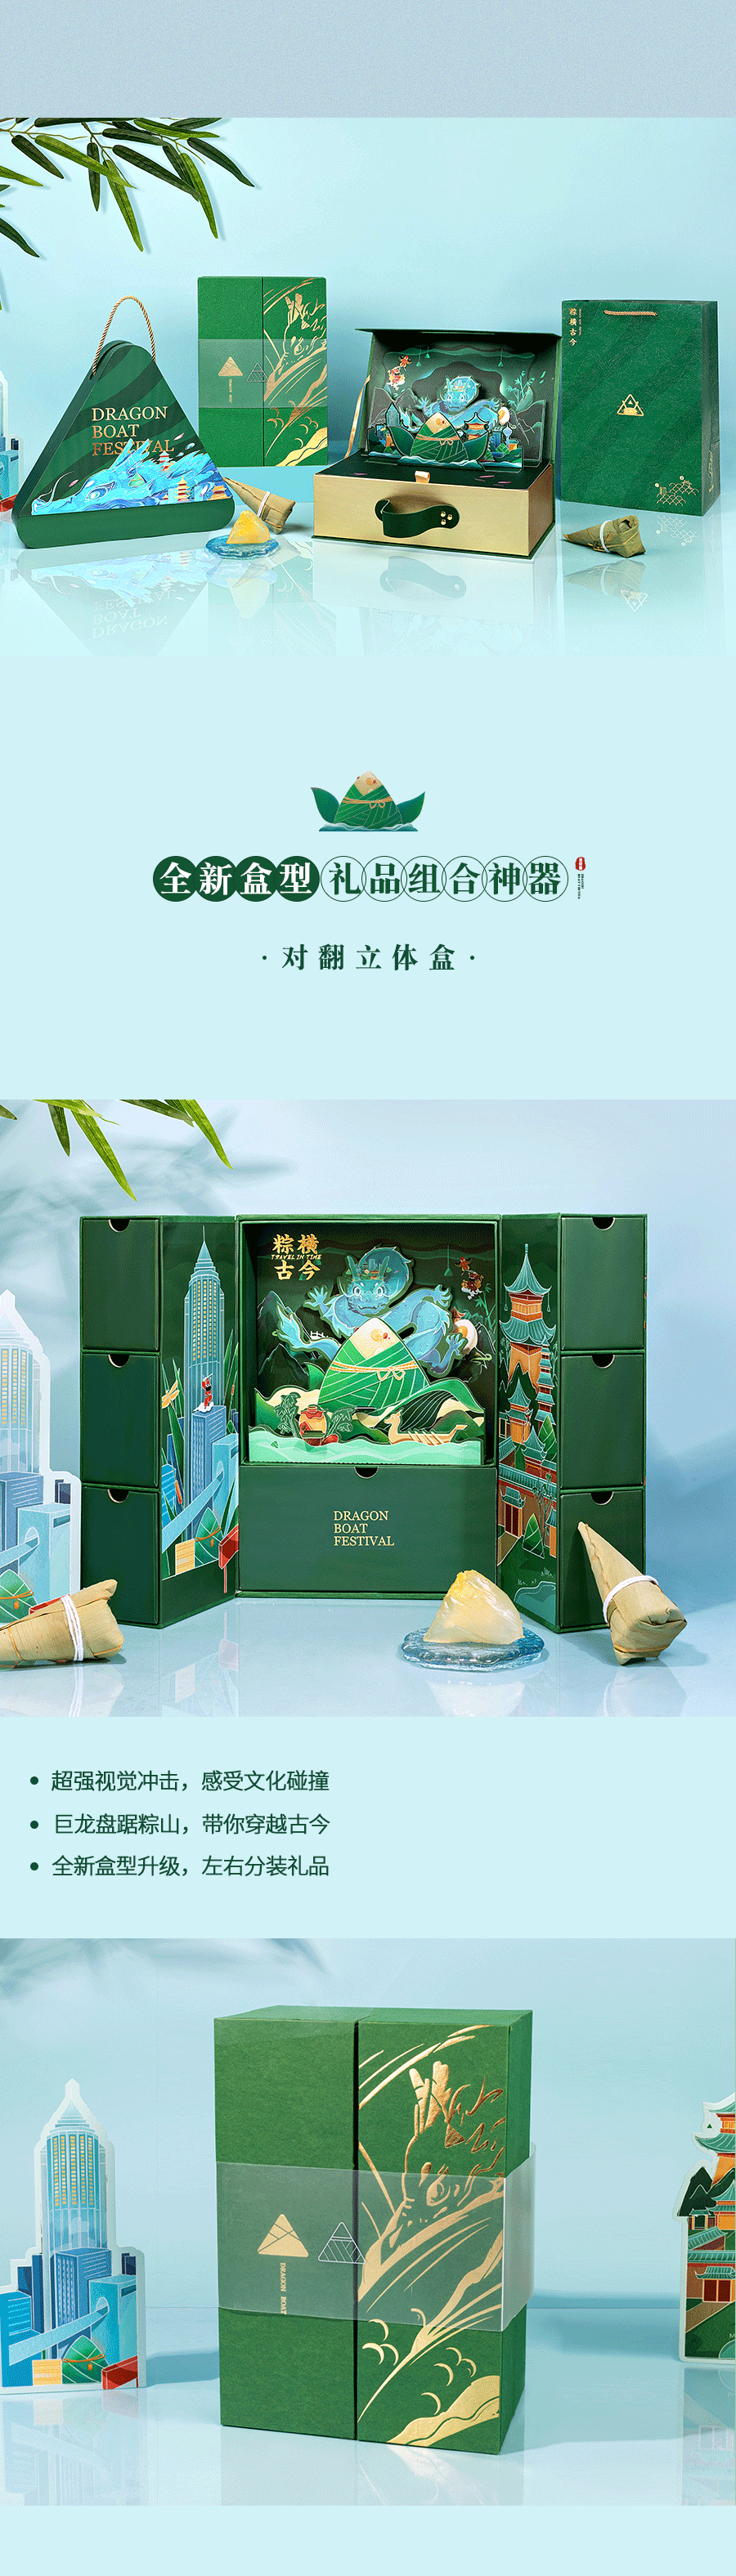 【方森园】端午礼盒包装设计——《粽横古今》